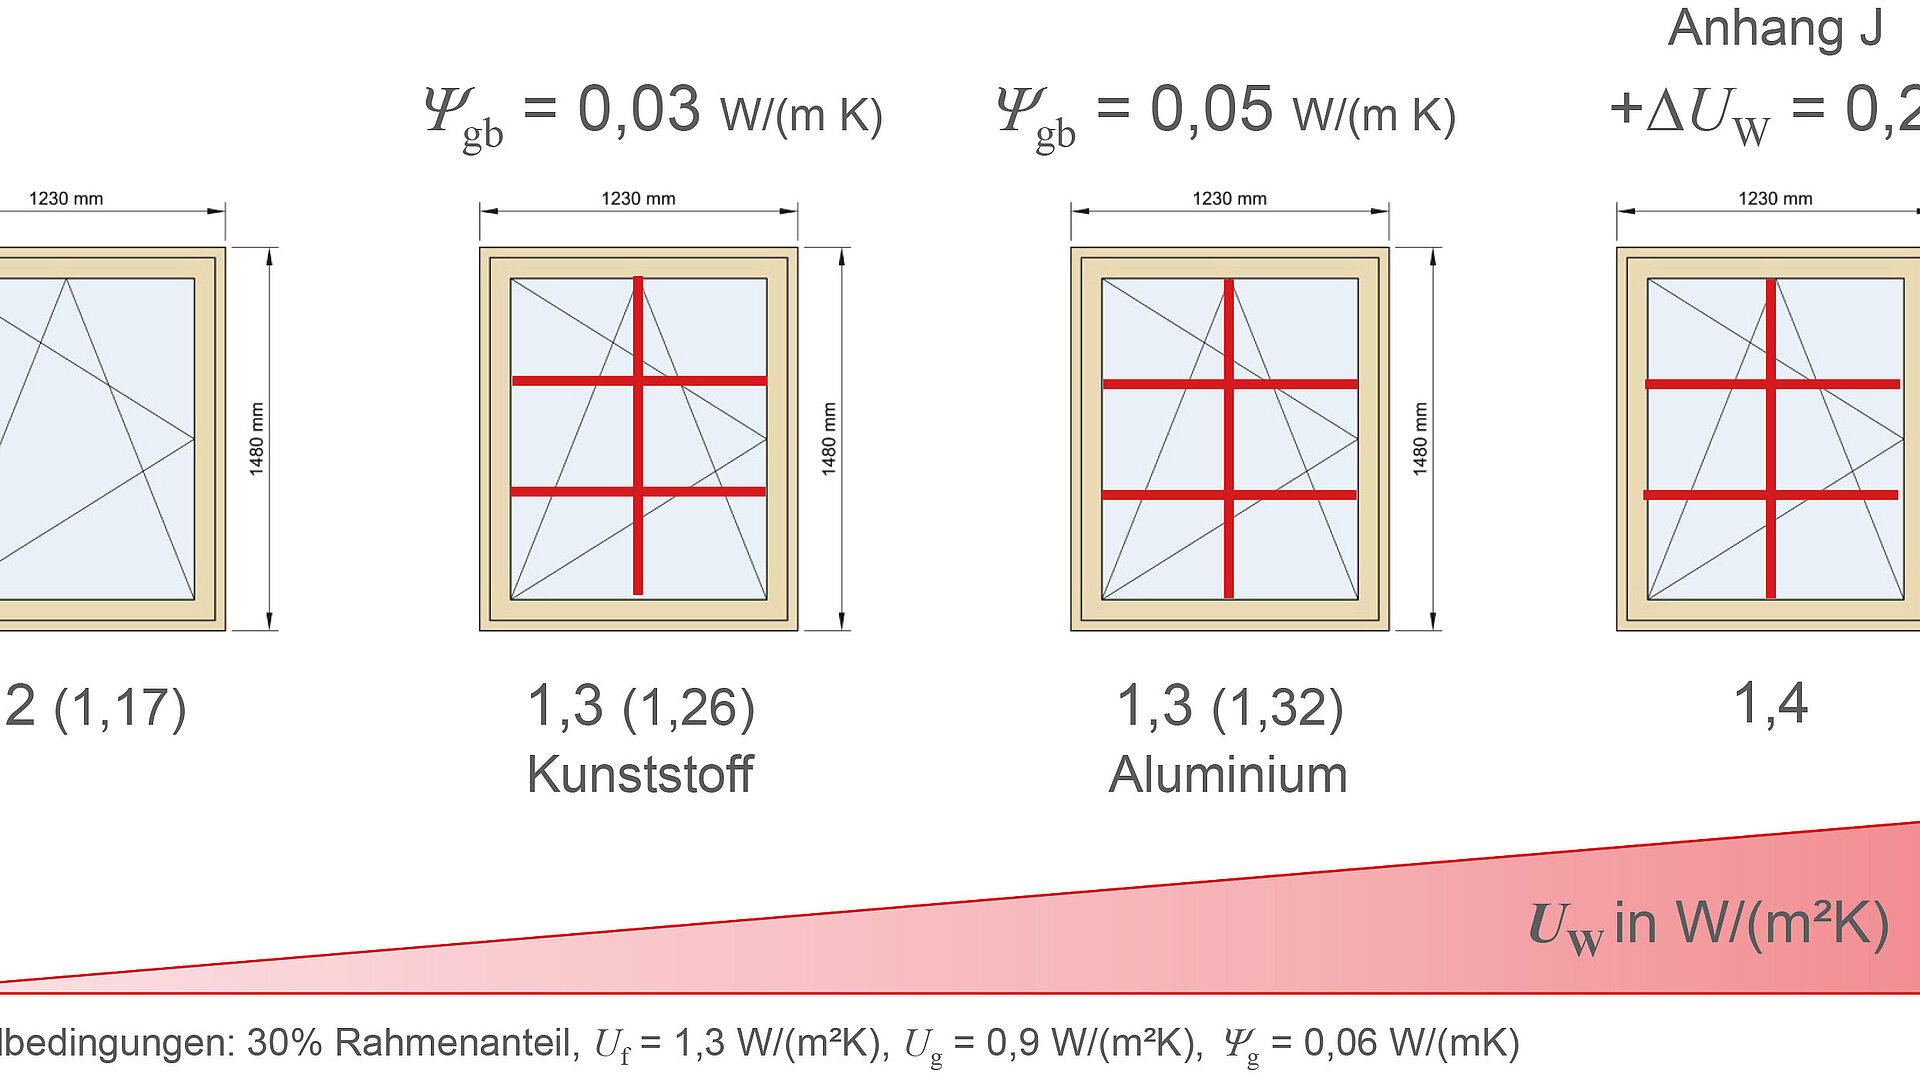 Das Schaubild zeigt die Berechnung des UW-Wertes von Sprossenfenstern. Zu sehen sind vier verschiedene Fenster und ein rechtwinkliges Dreieck, das den UW-Wert darstellt. Nähere Informationen zur Darstellung erhalten Sie auf Anfrage unter +49 8031 261-2150.